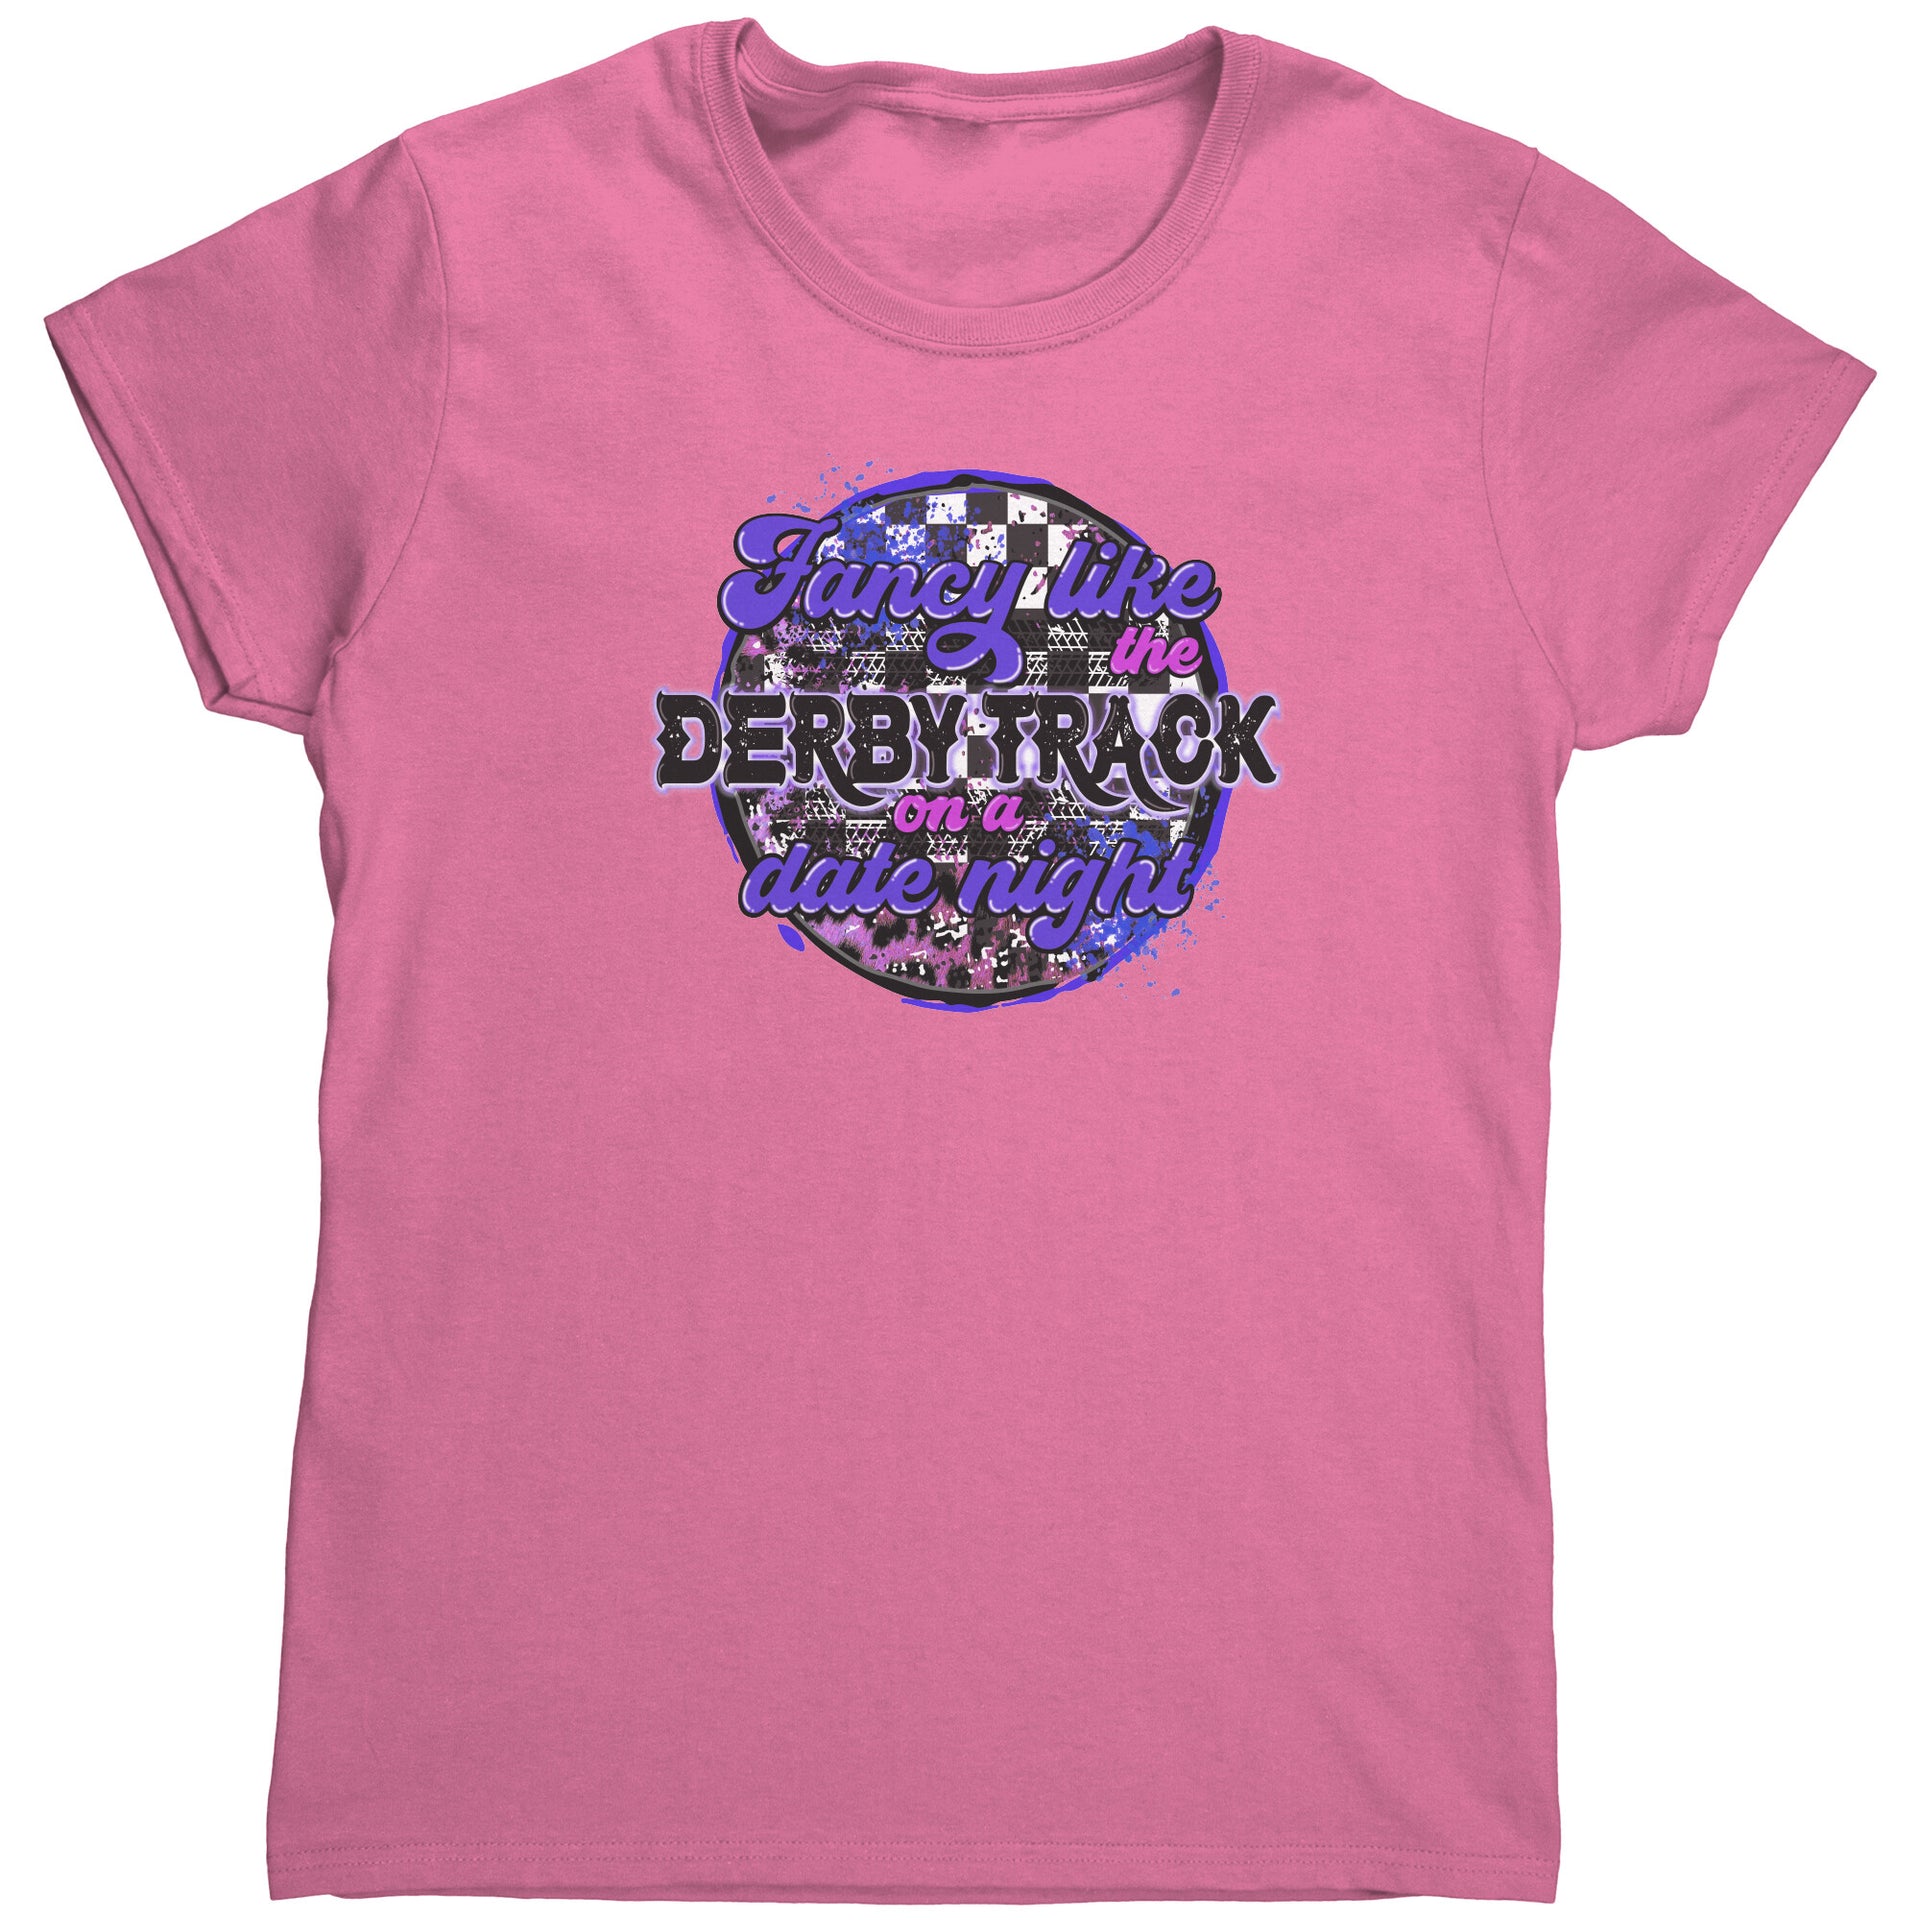 Demolition Derby T-Shirts